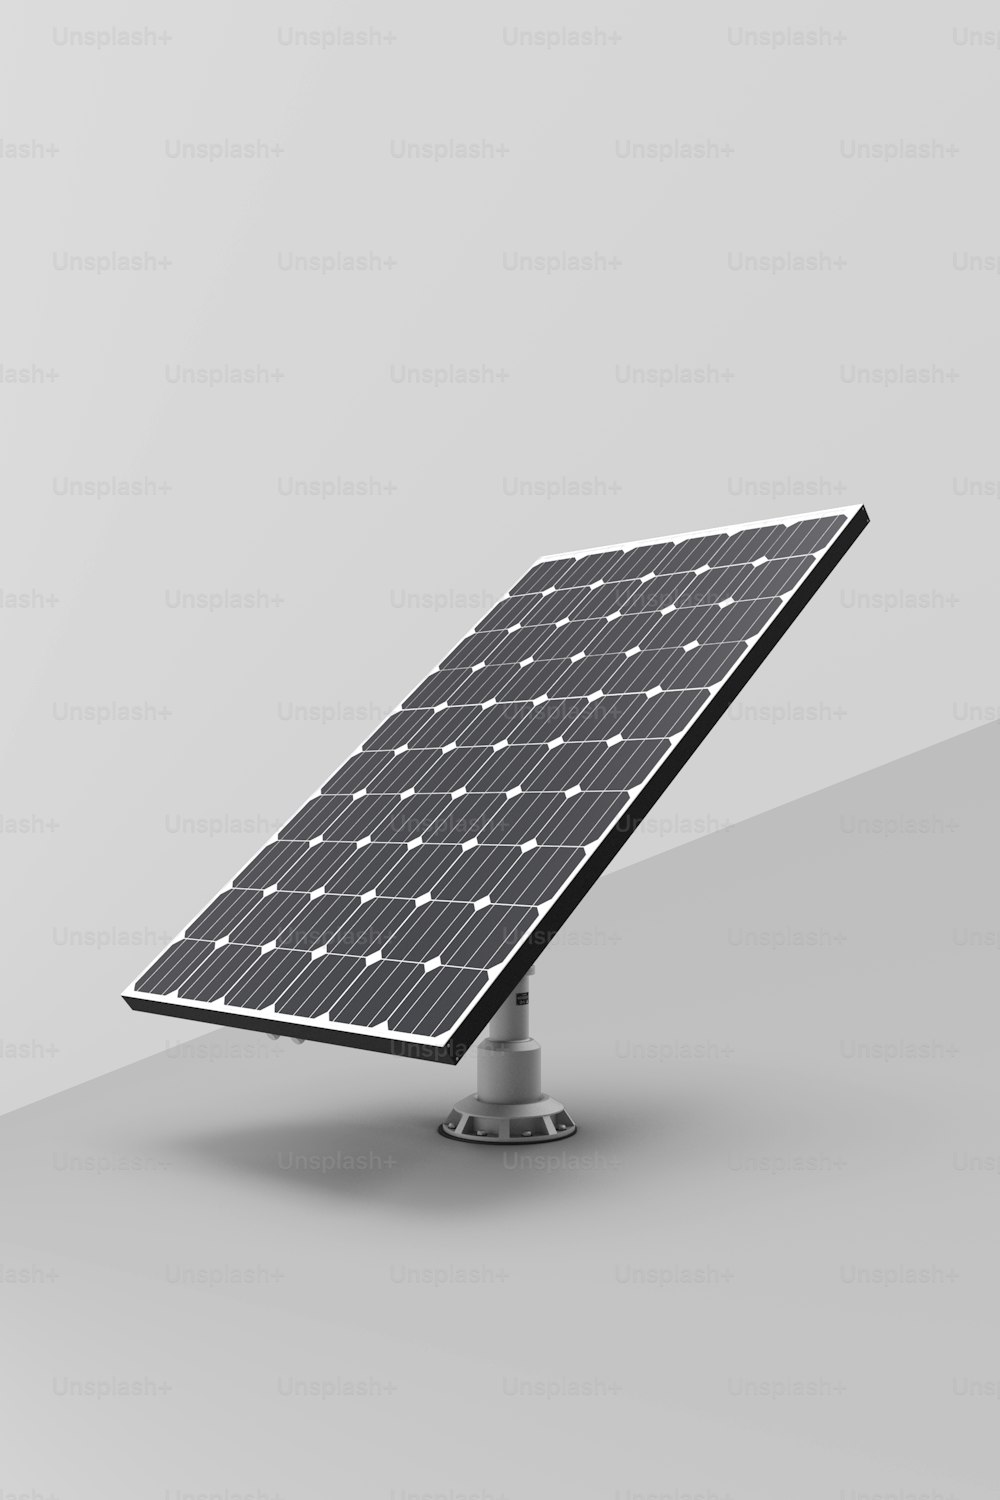 Una foto en blanco y negro de un panel solar